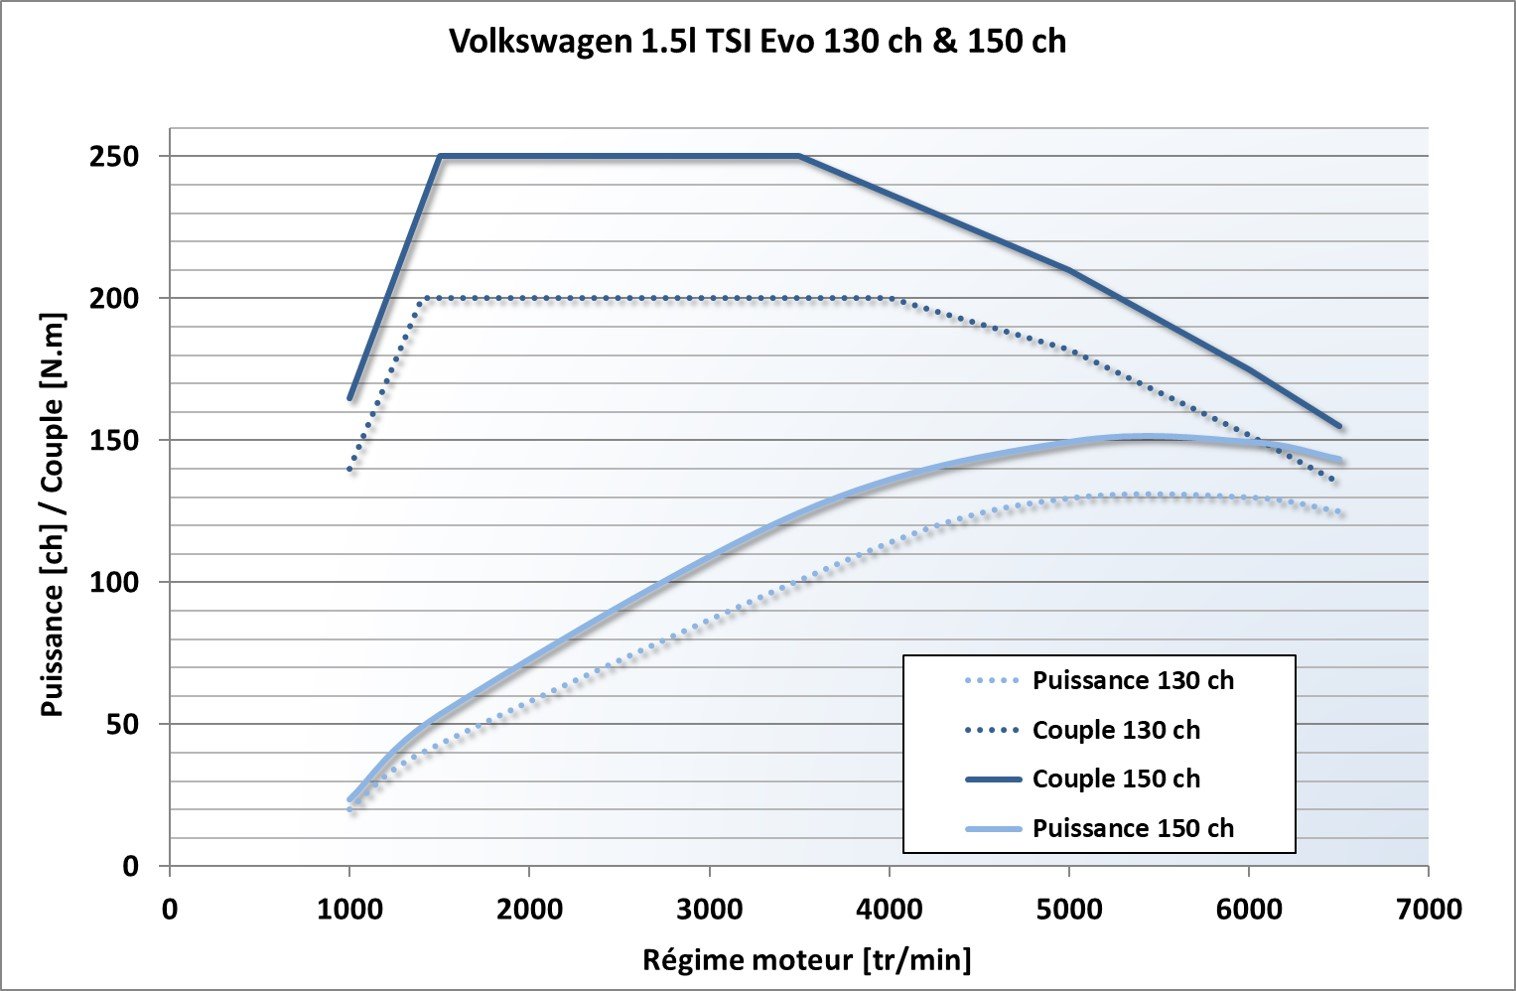 Puissance et couple Volkswagen 1.5 TSI 130 et 150 chevaux